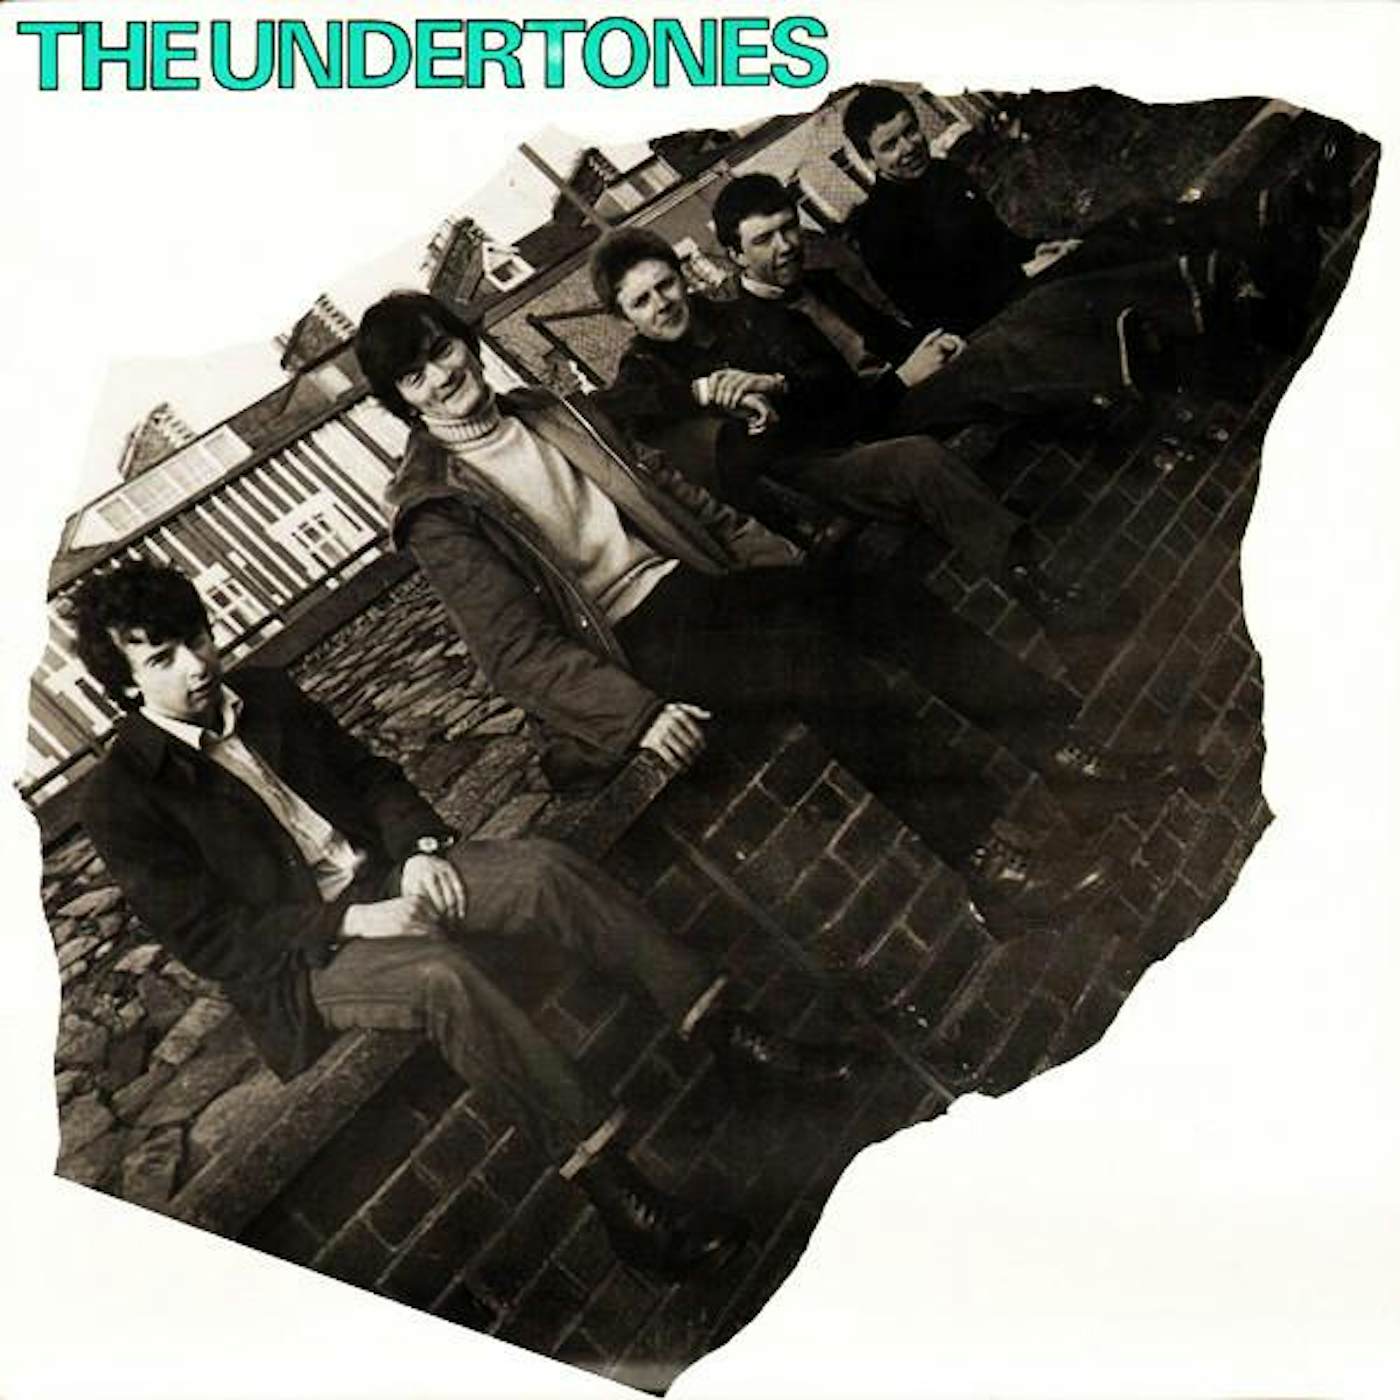 The Undertones Vinyl Record